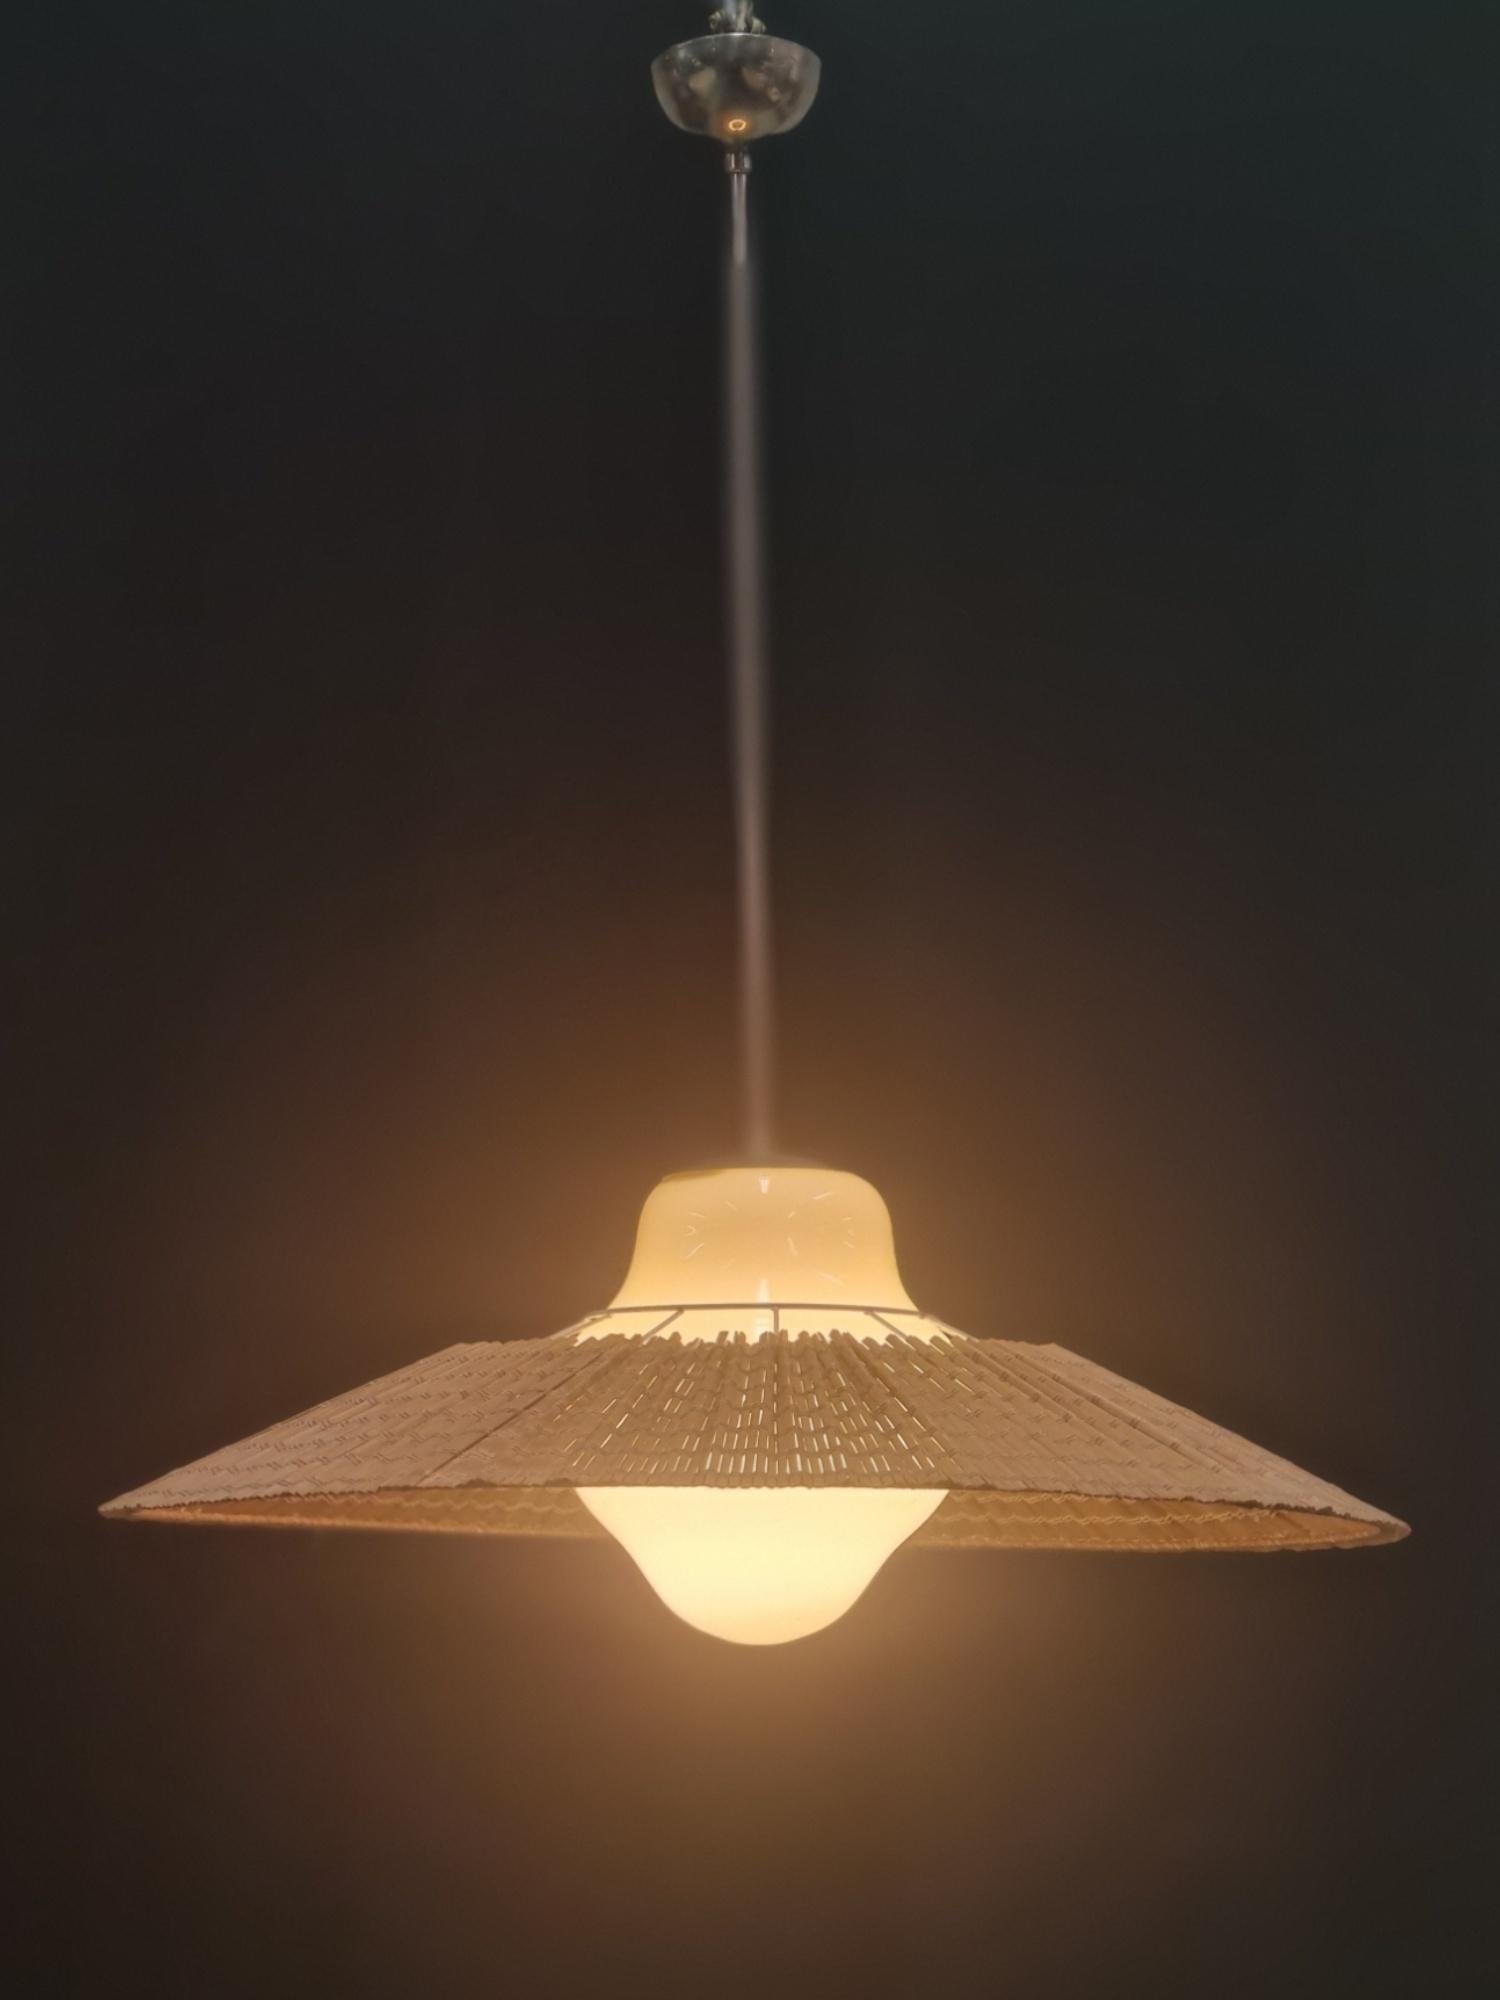 Lisa Johansson-Papé Ceiling Lamp model 1088, Orno 2